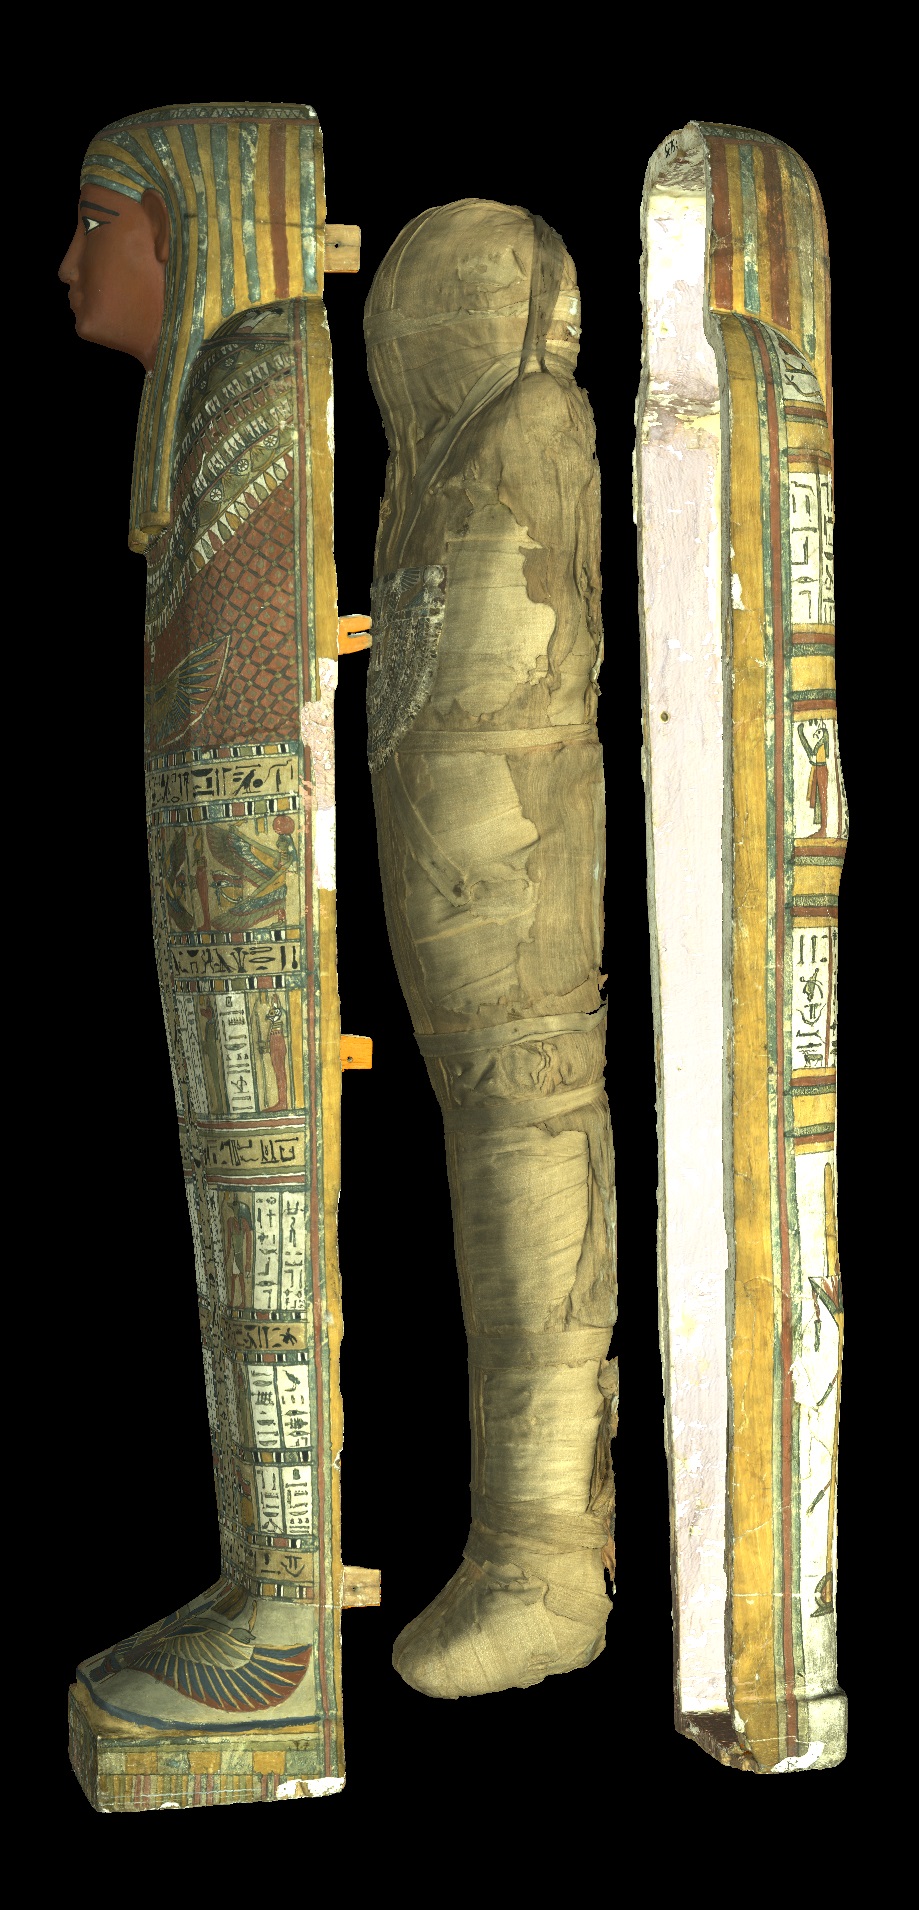 Sarcófago de la momia de Penamunnebnesuttawy abierto. Probablemente Tebas, Egipto Dinastía XXV, c. 700 a. C. Madera. © Trustees of the British Museum.